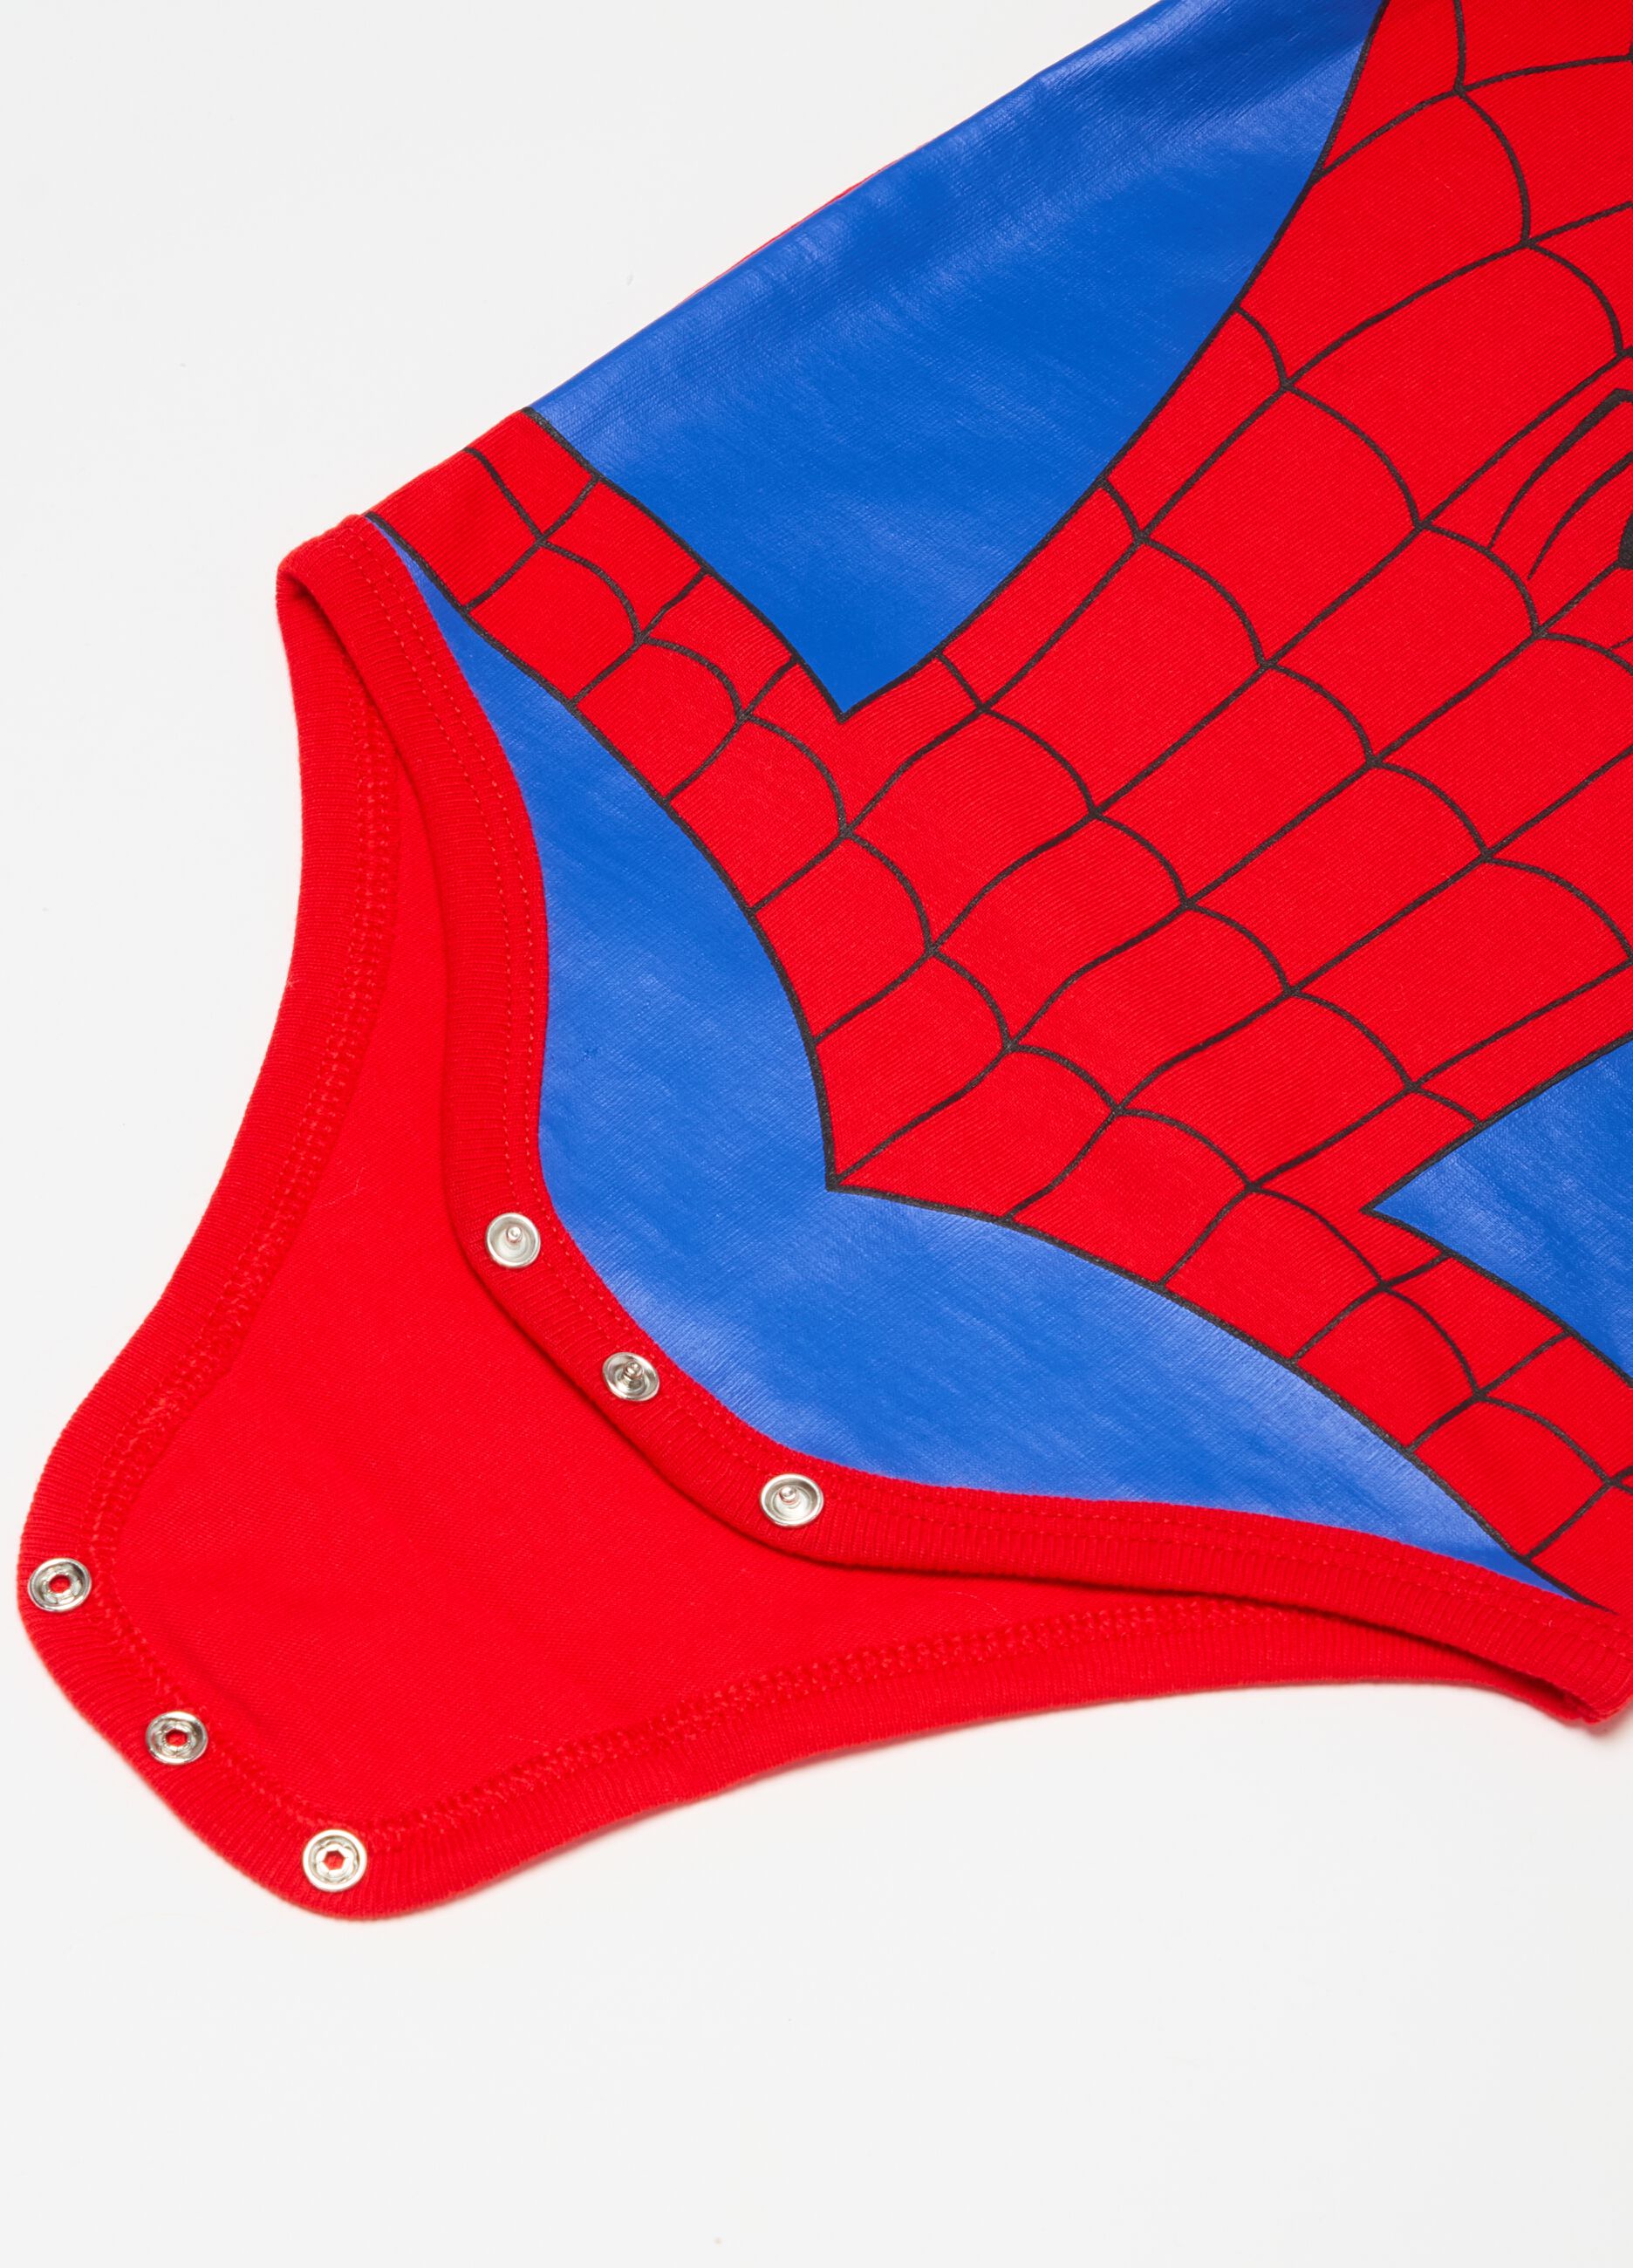 Spider-Man bodysuit and hat set